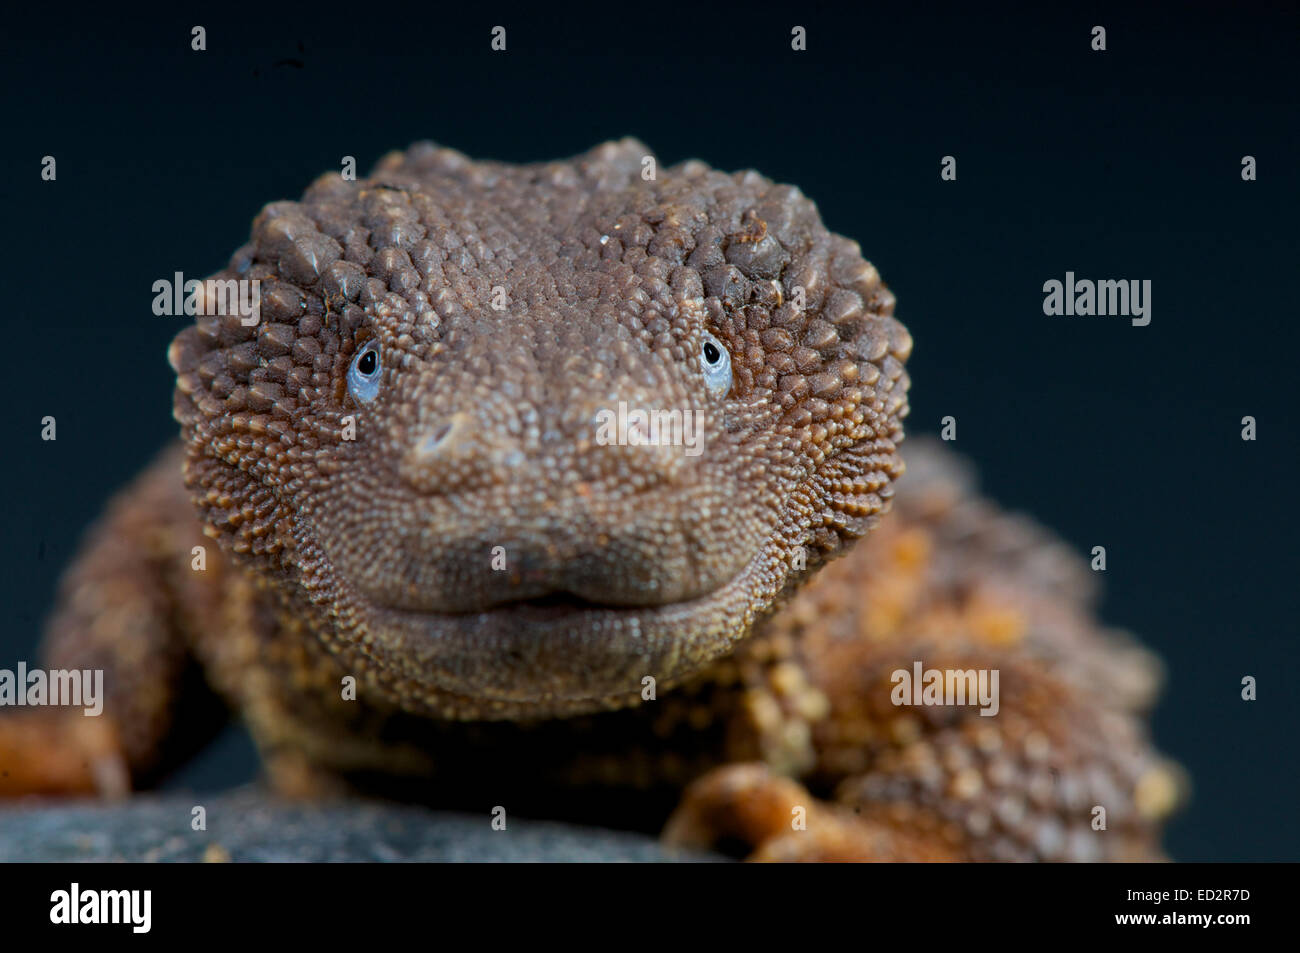 Earless monitor lizard  / Lanthanotus borneensis Stock Photo